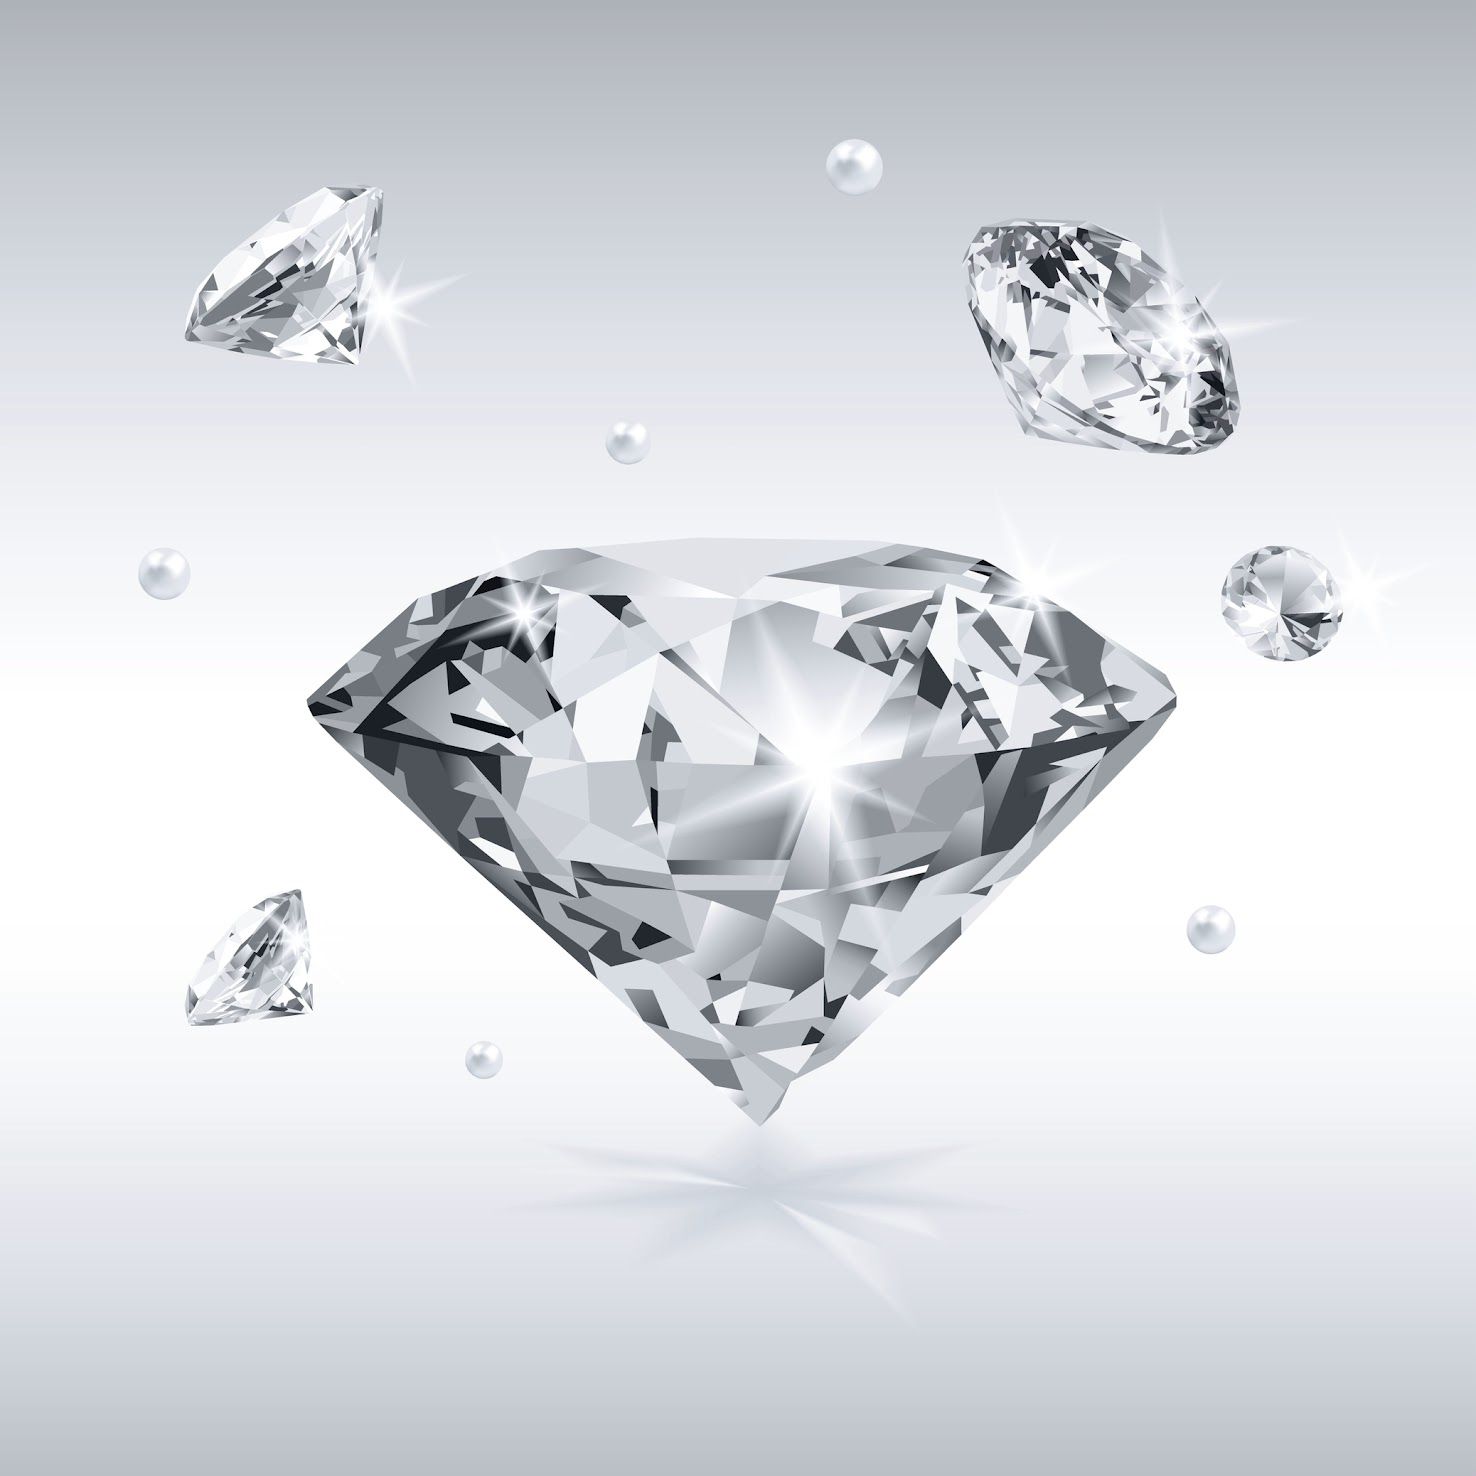 Immagine di un anello di fidanzamento con diamante naturale scintillante, che mostra la sua rara bellezza e il suo valore duraturo